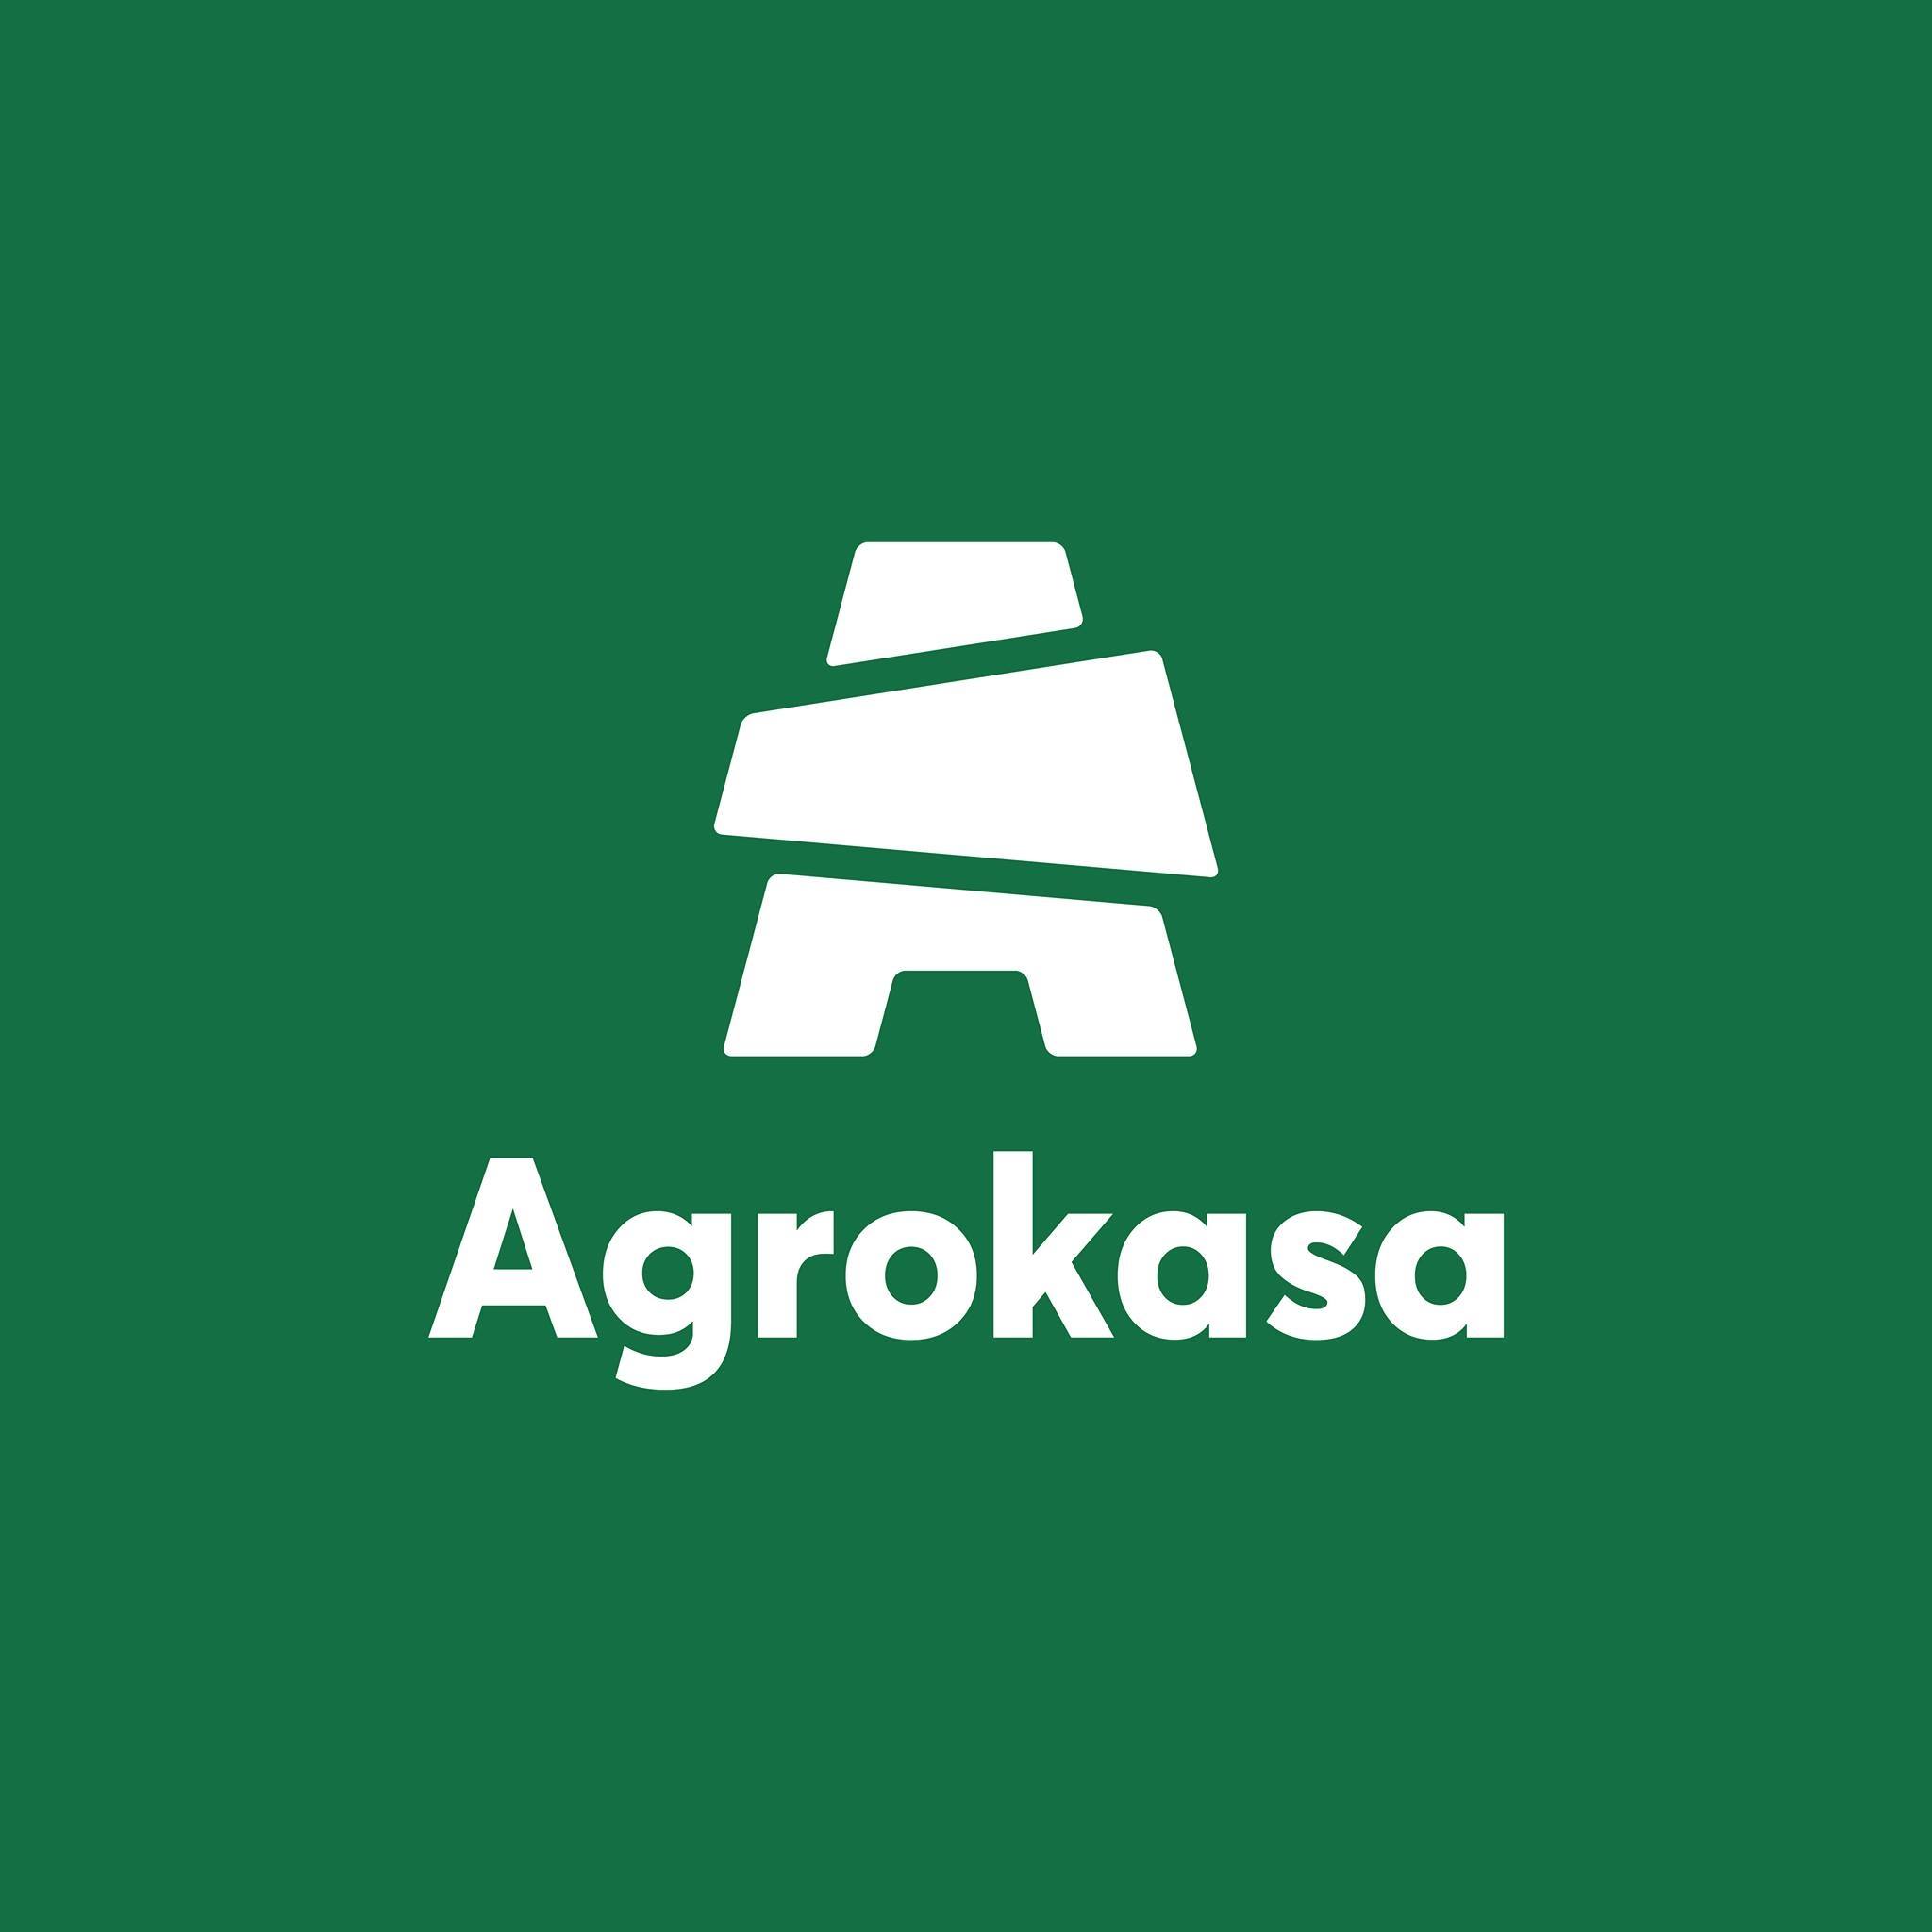 Agrokasa Holdings